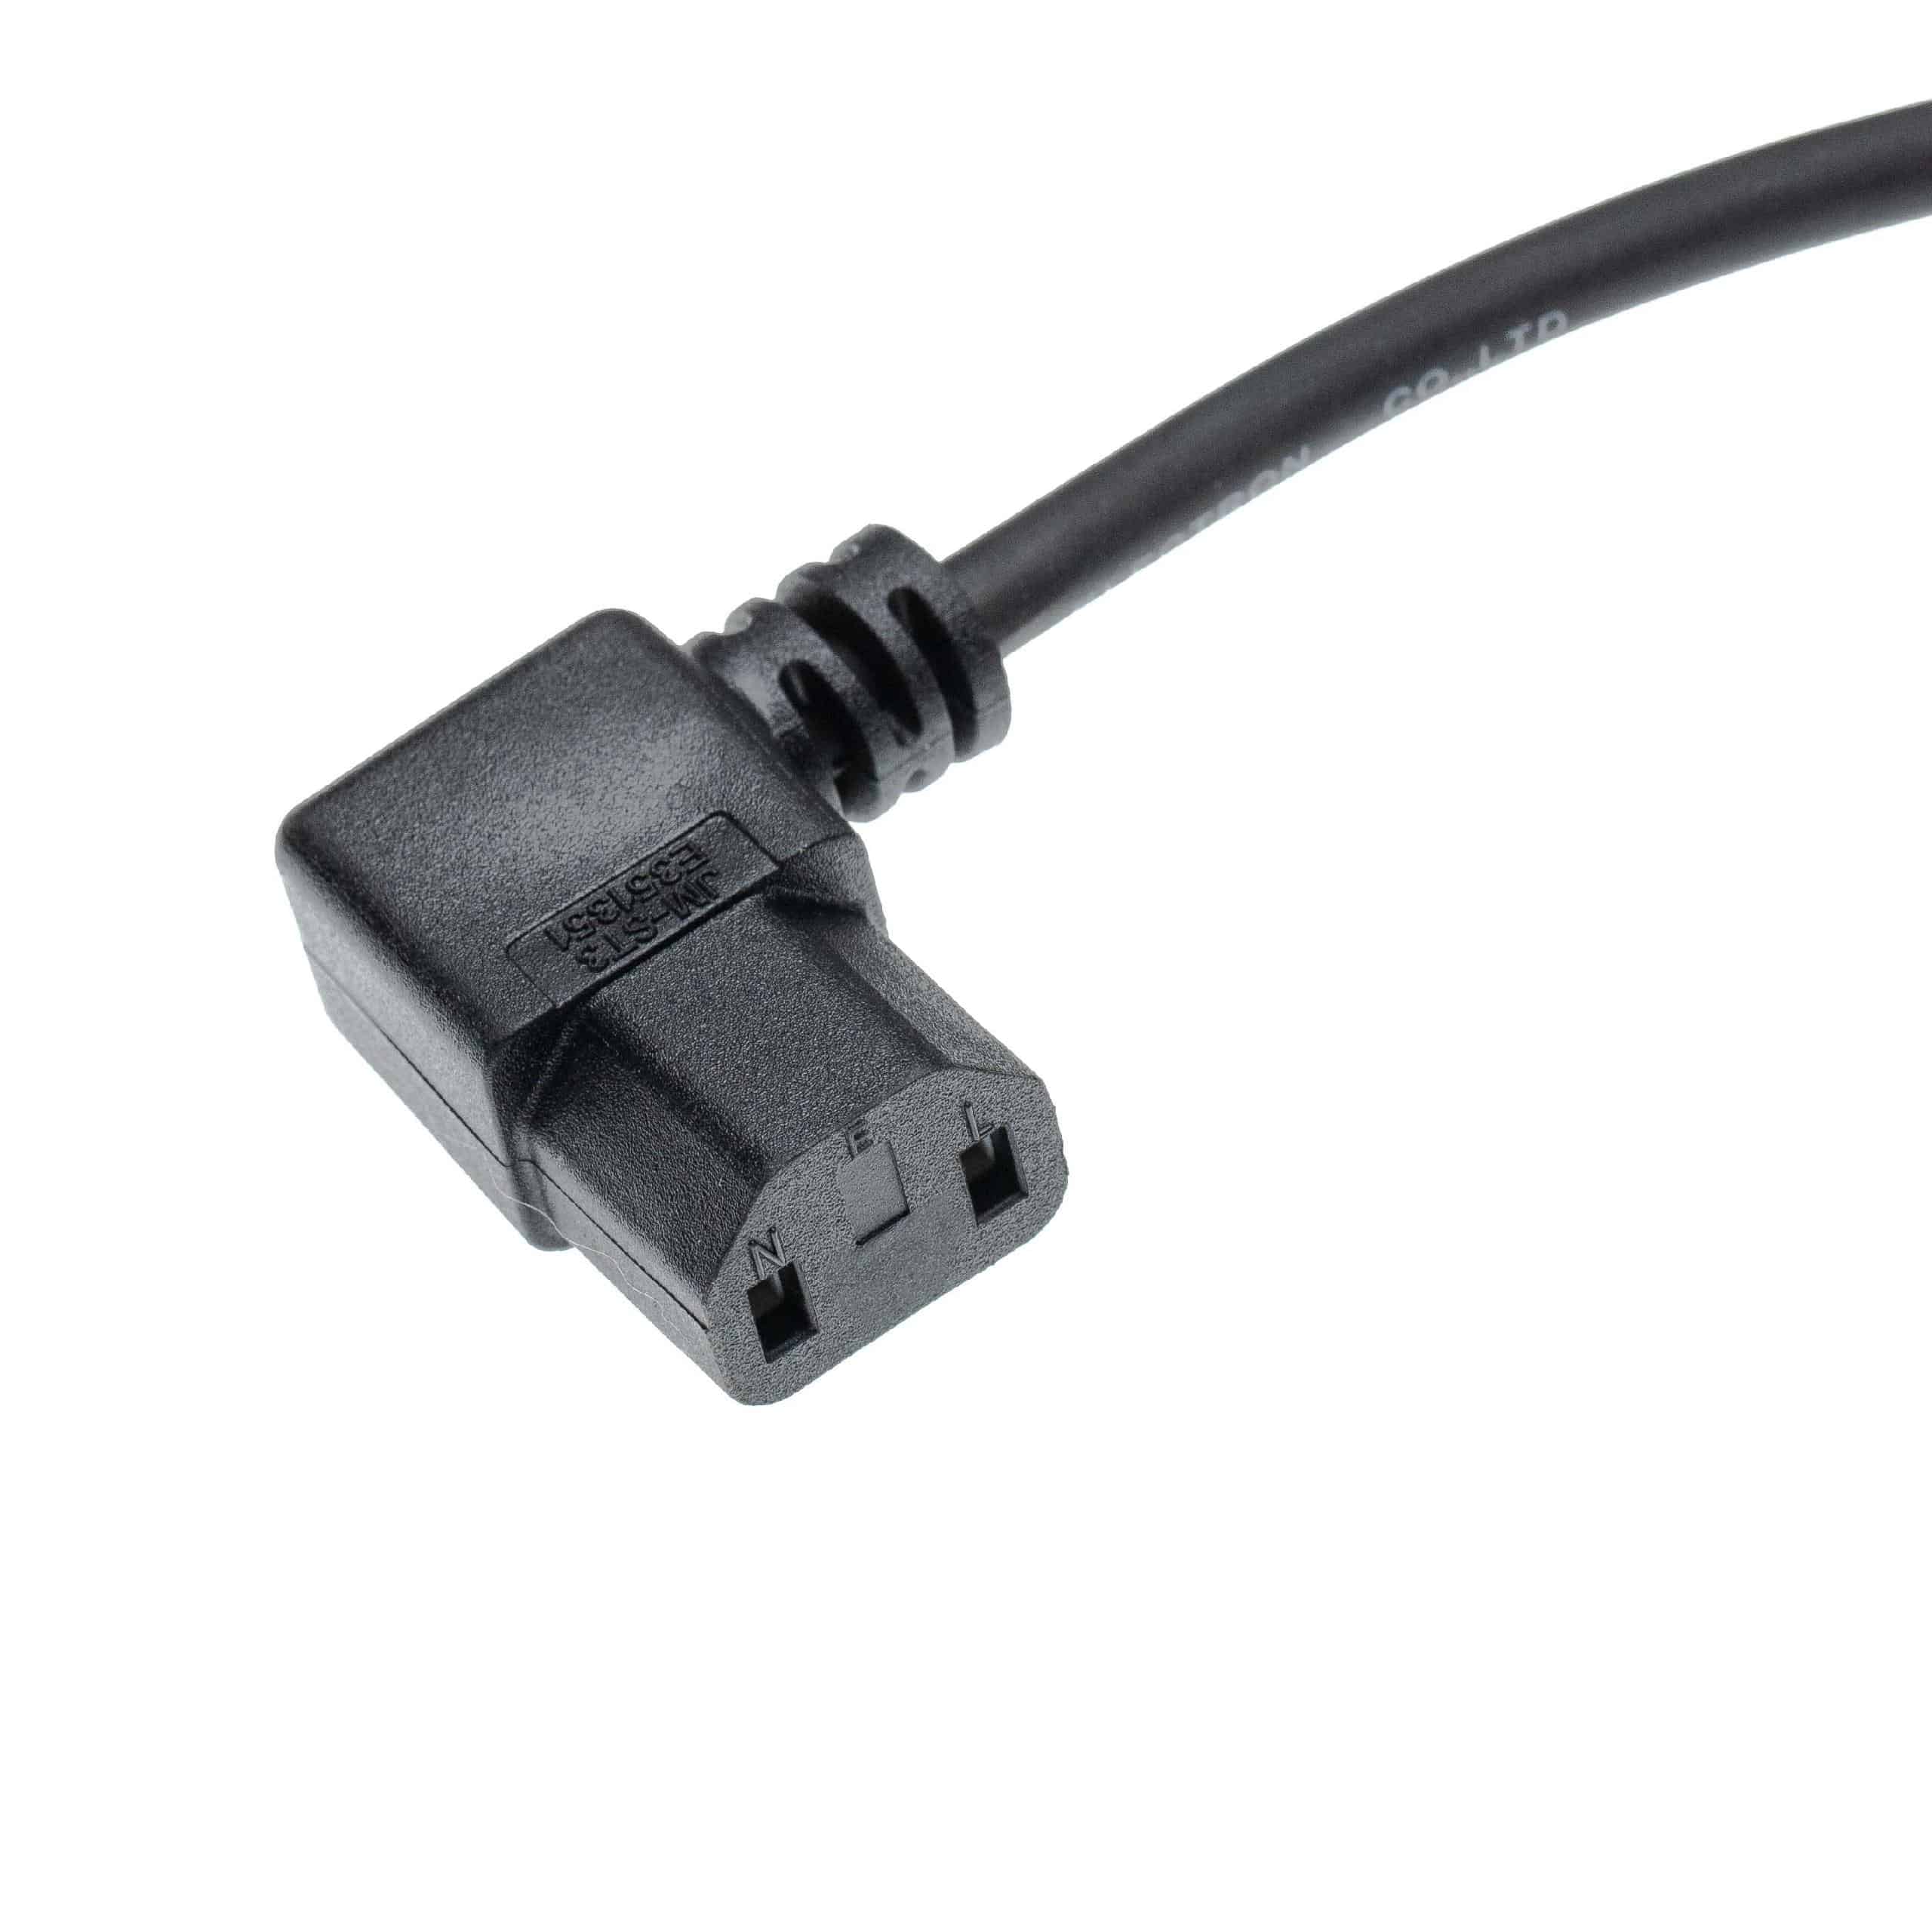 Cable para alimentación eléctrica reemplaza Moneual 8809141316269 para aspiradoras Kirby - 10 m